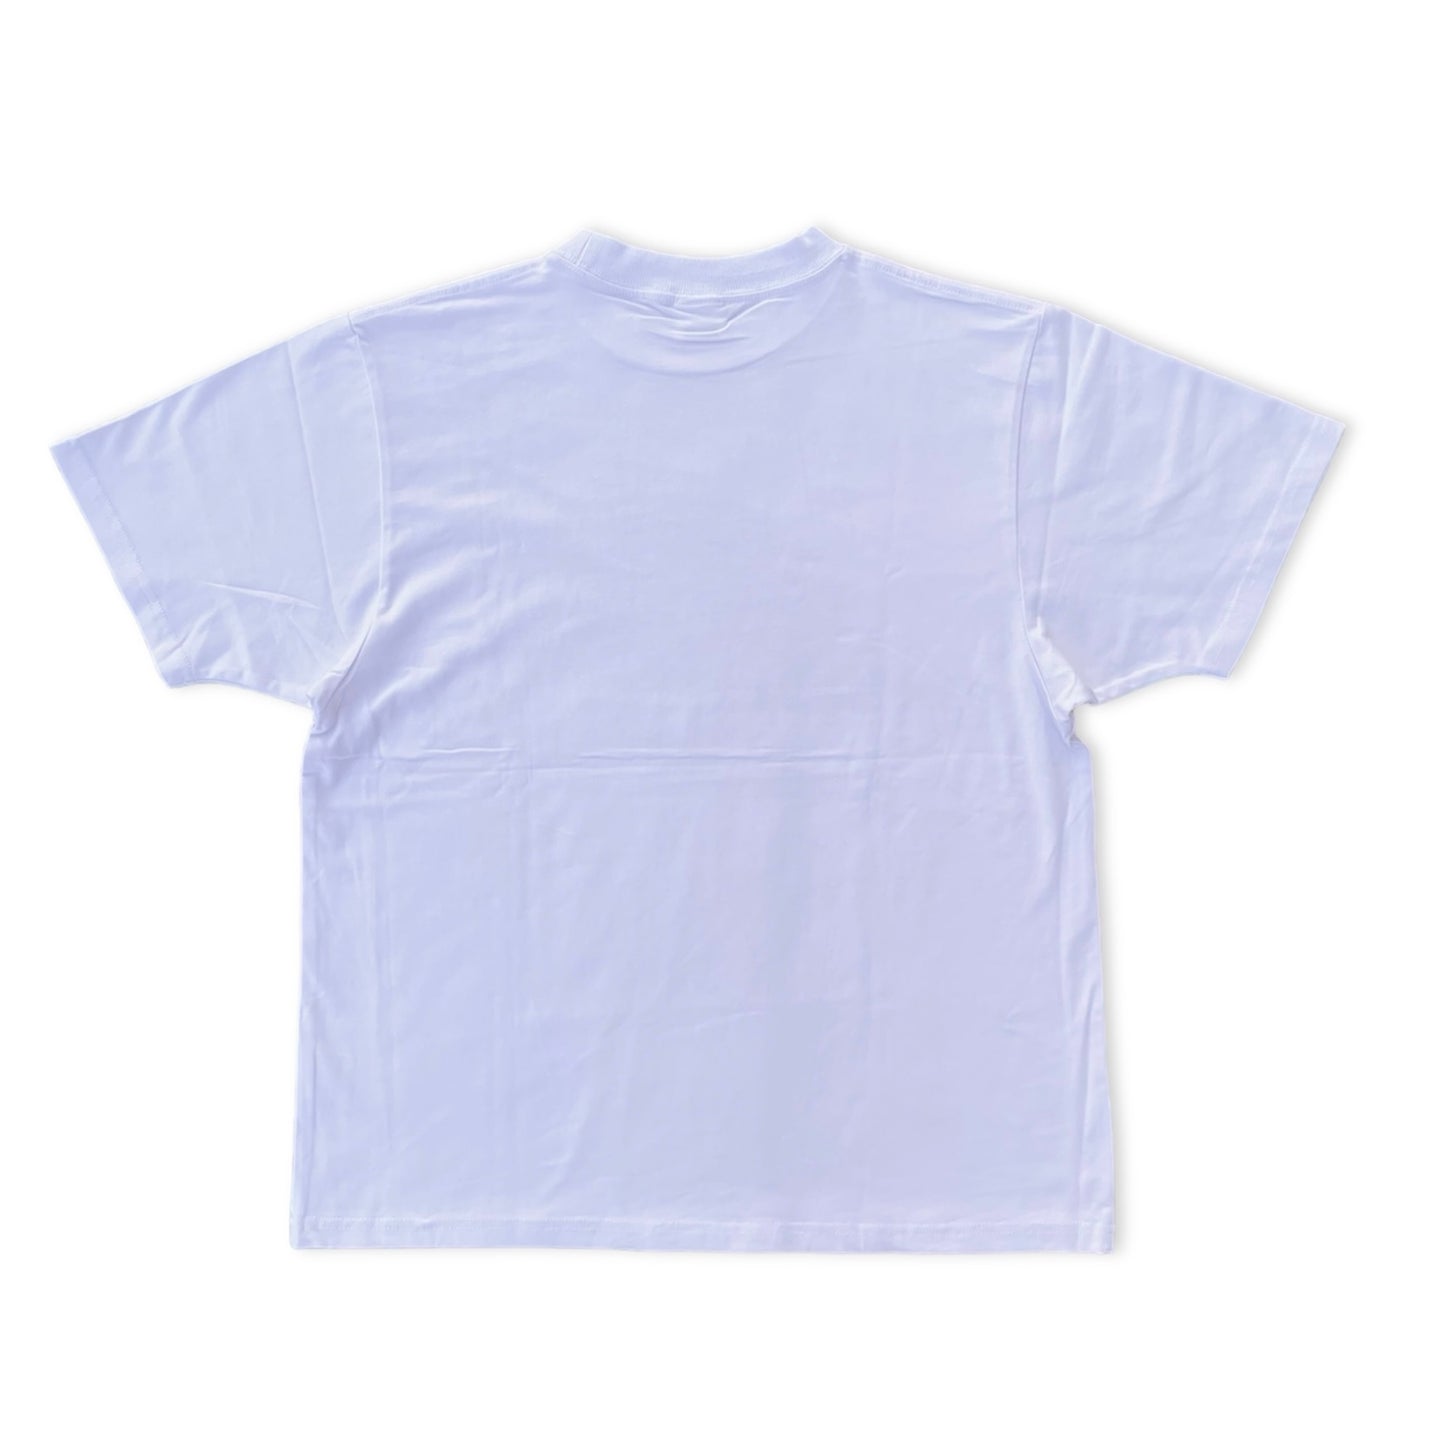 【UNION originals × KOJIMAM - ユニオンオリジナルス×コージマン】鼠小僧 T-shirt / White (ネズミコゾウ ティーシャツ ホワイト)